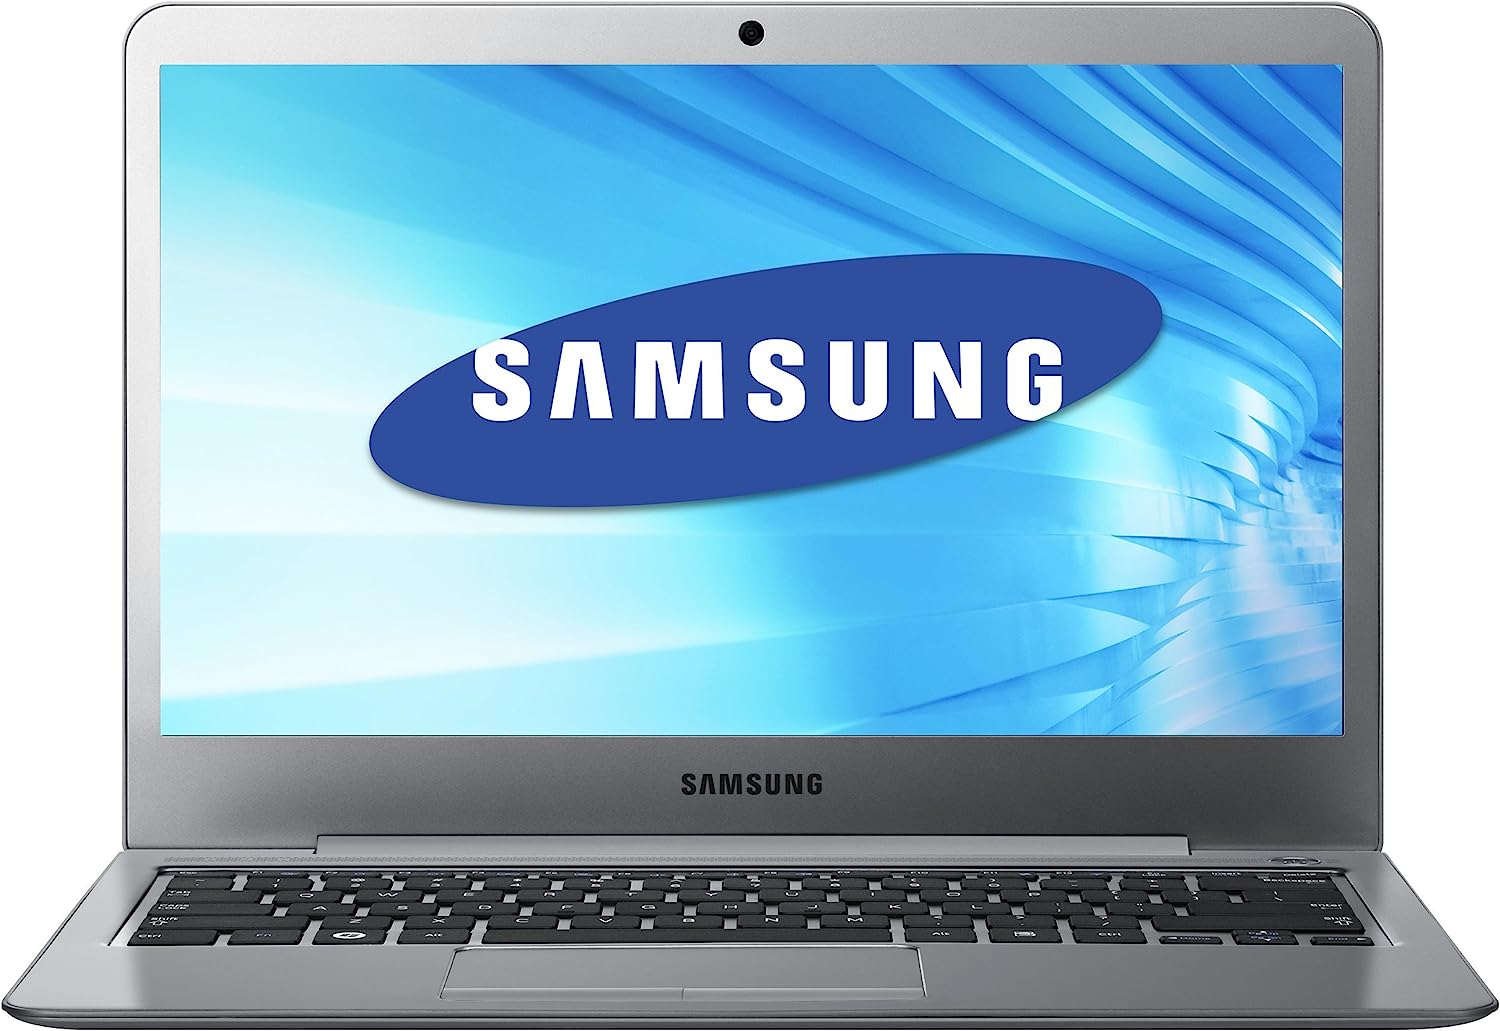 Samsung Series 5 Ultrabook NP530U3C Notebook